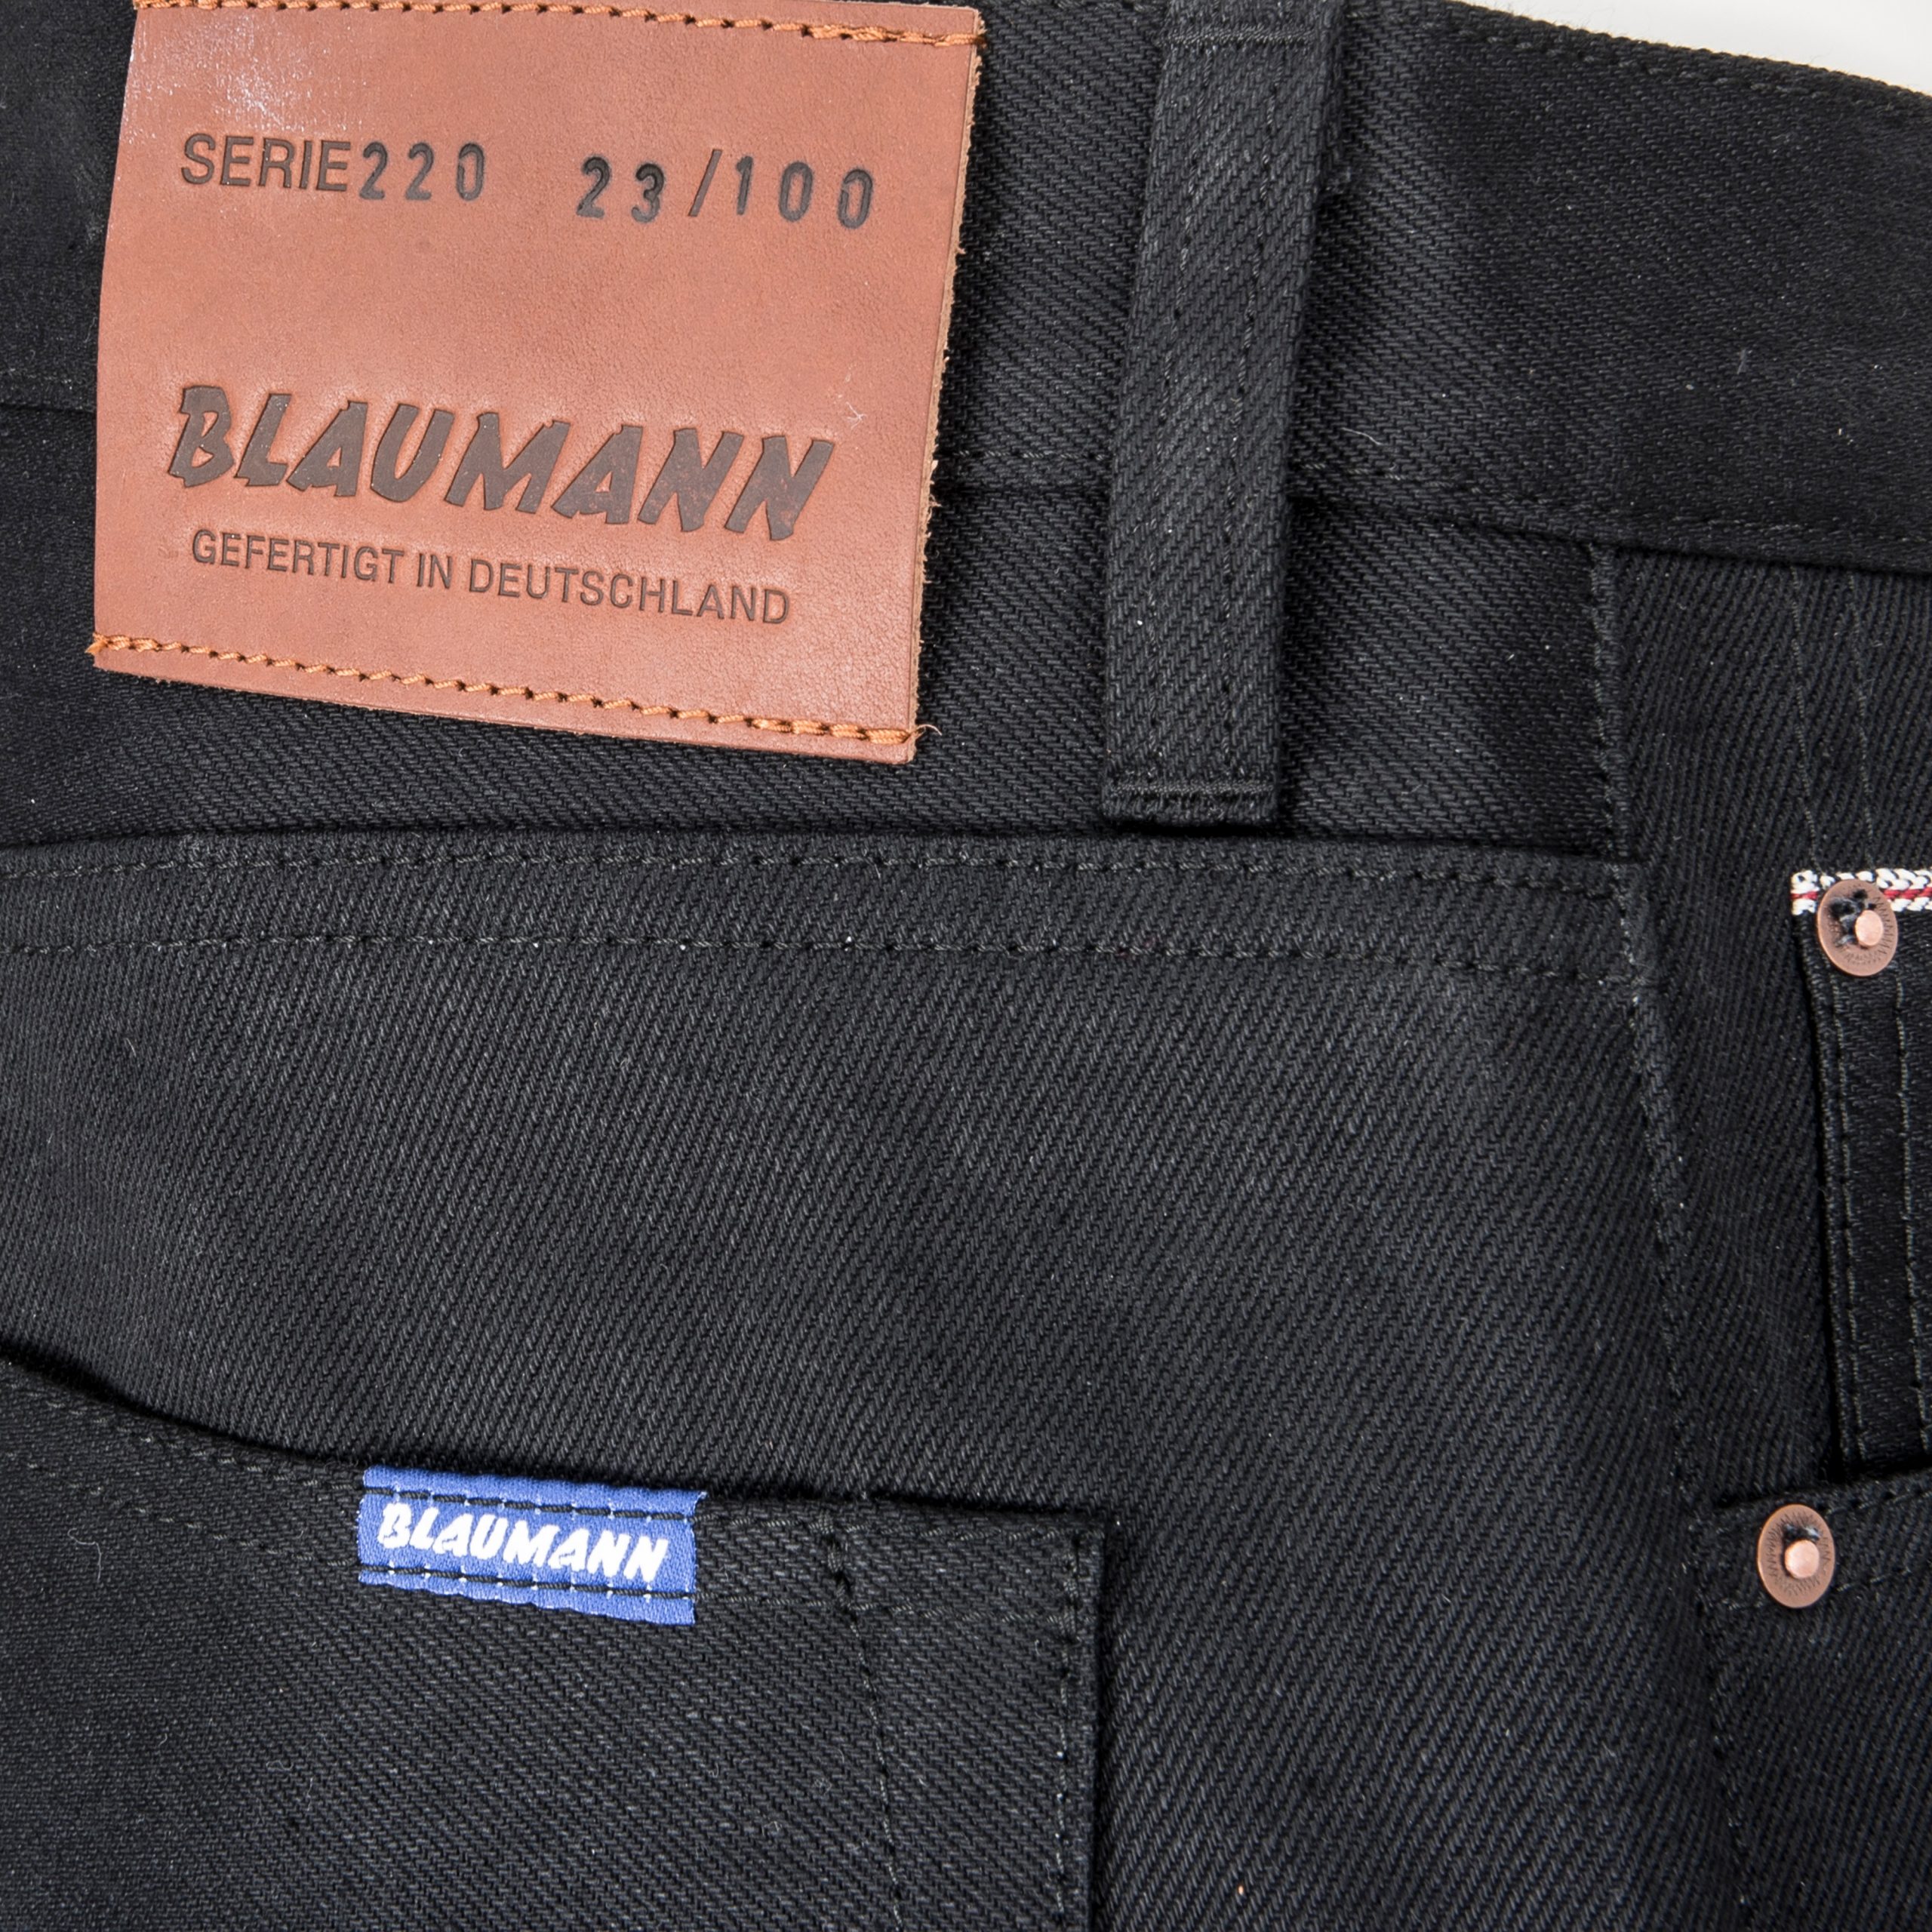 https://www.b74.de/wp-content/uploads/2020/08/Blaumann-Jeans-Denim-Schmaler-Blaumann-Schwarz-47-29-scaled.jpg